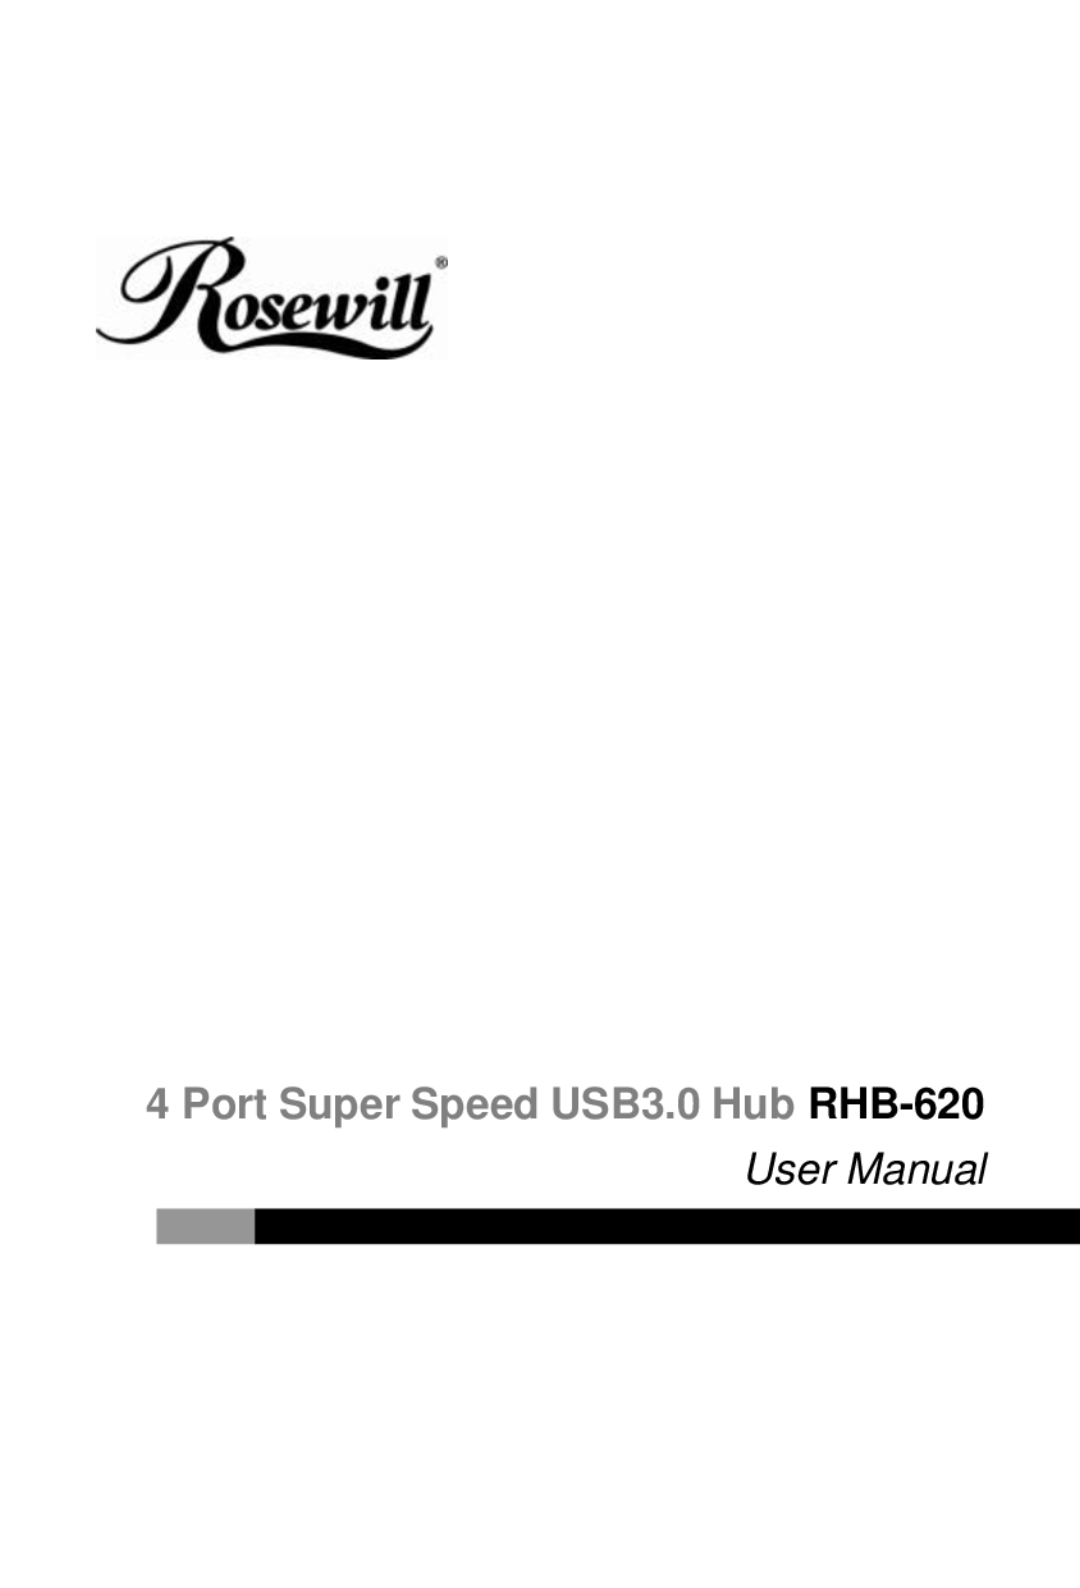 Rosewill user manual Port Super Speed USB3.0 Hub RHB-620, User Manual 